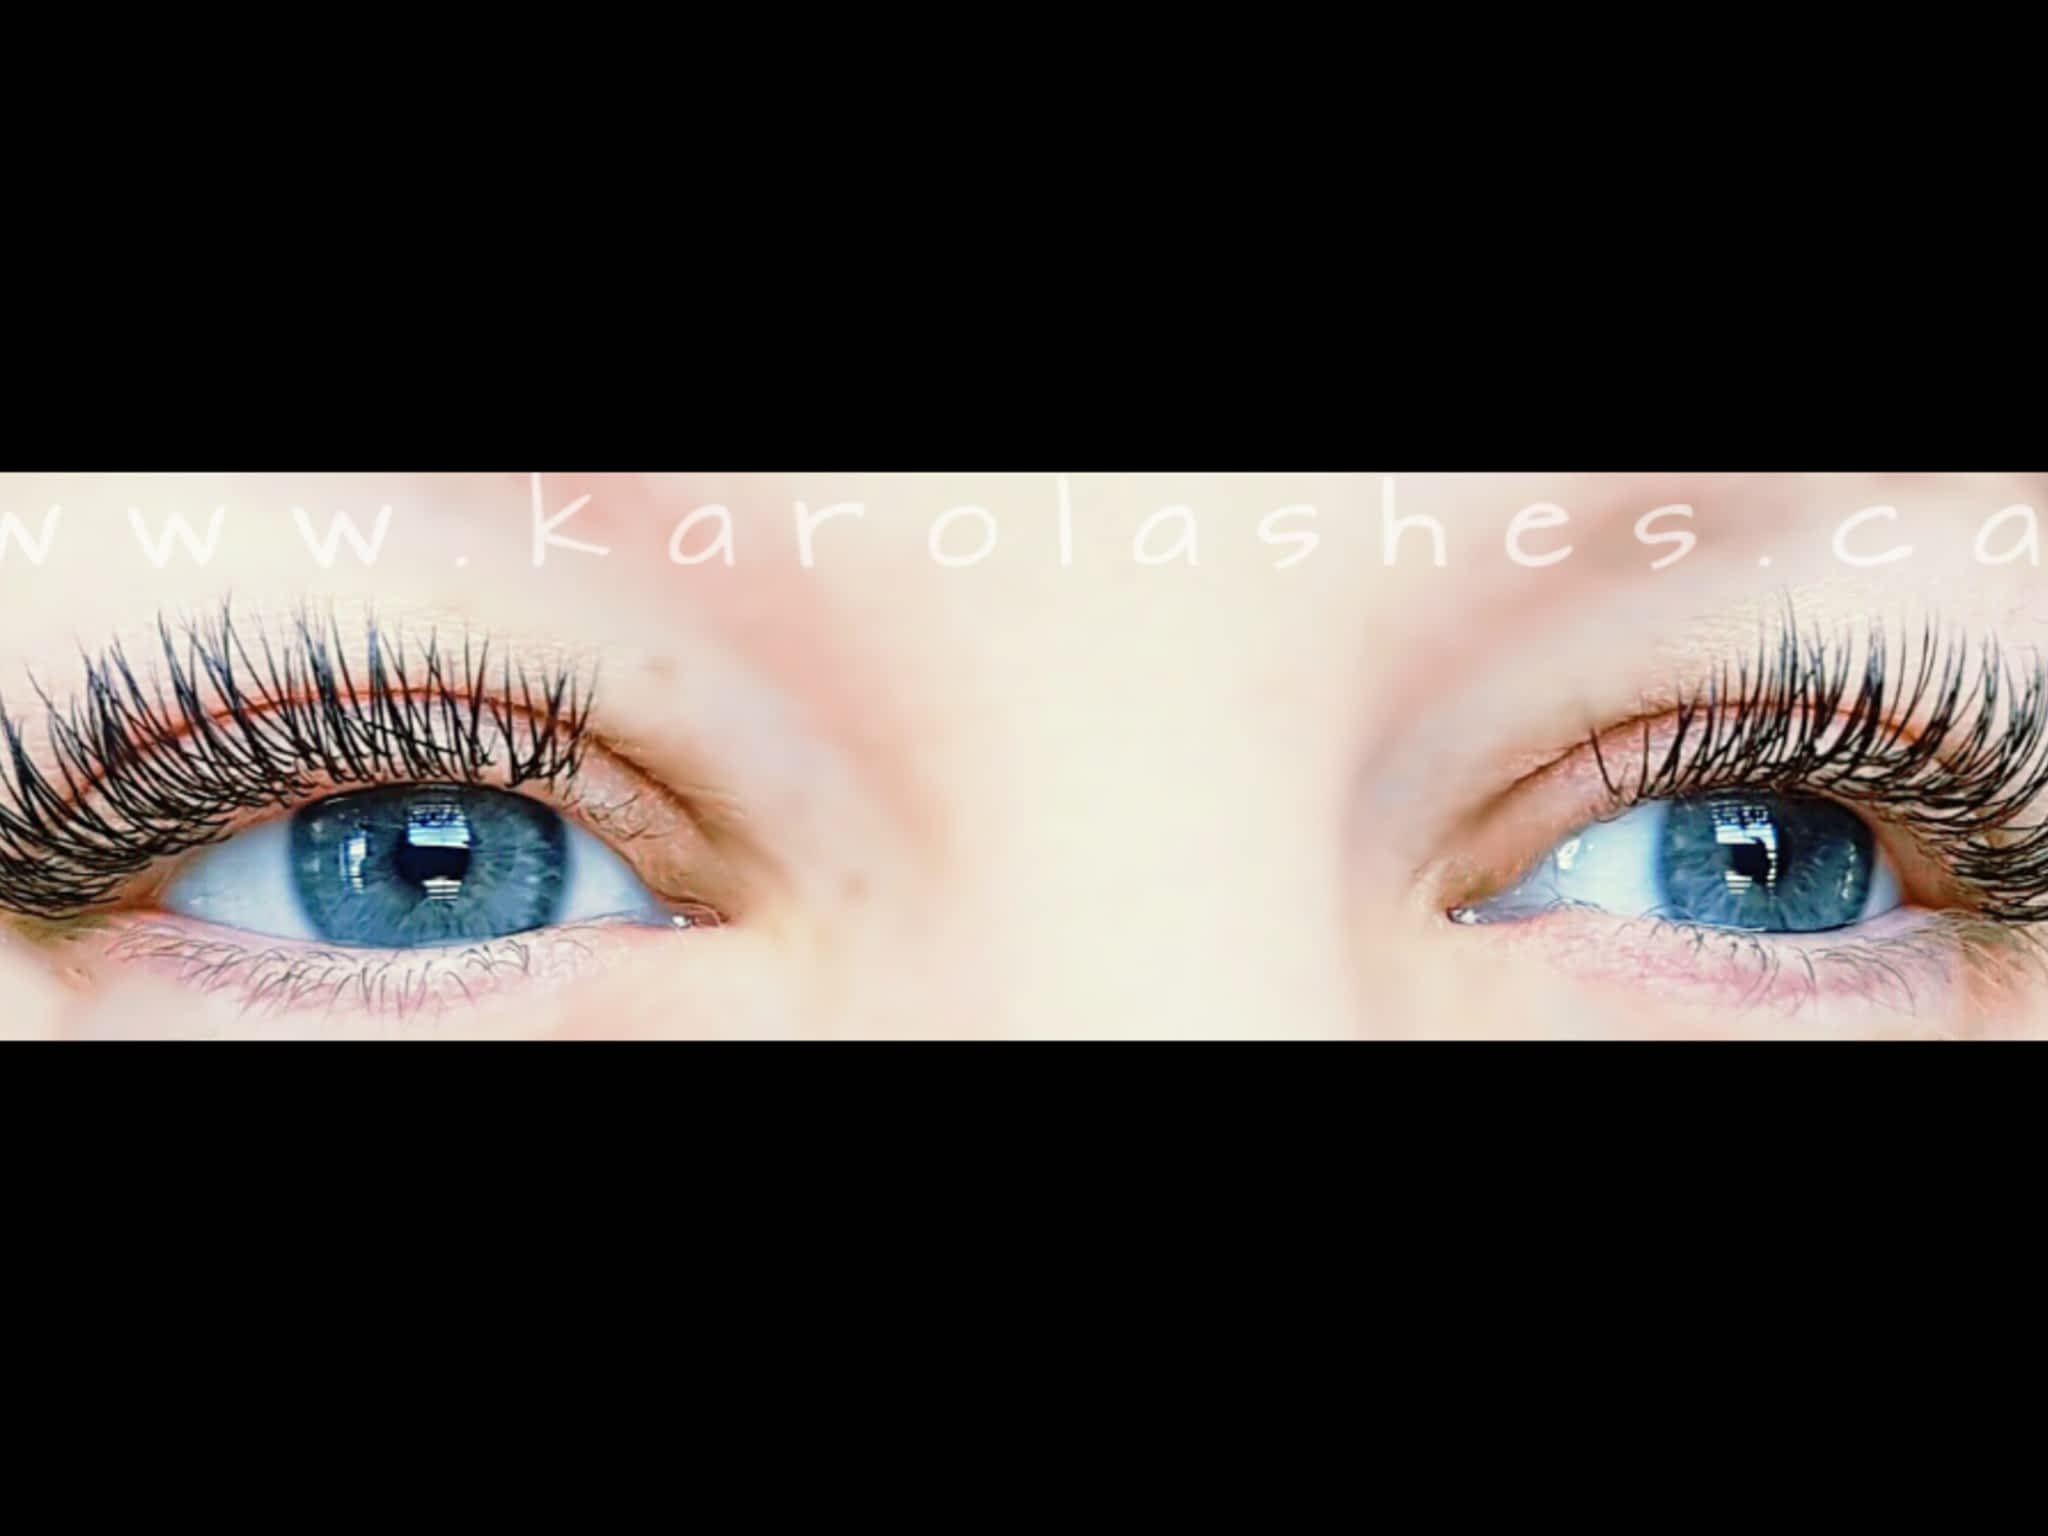 photo Esthétique KaroLashes - Micro-pigmentation - Soins de beauté